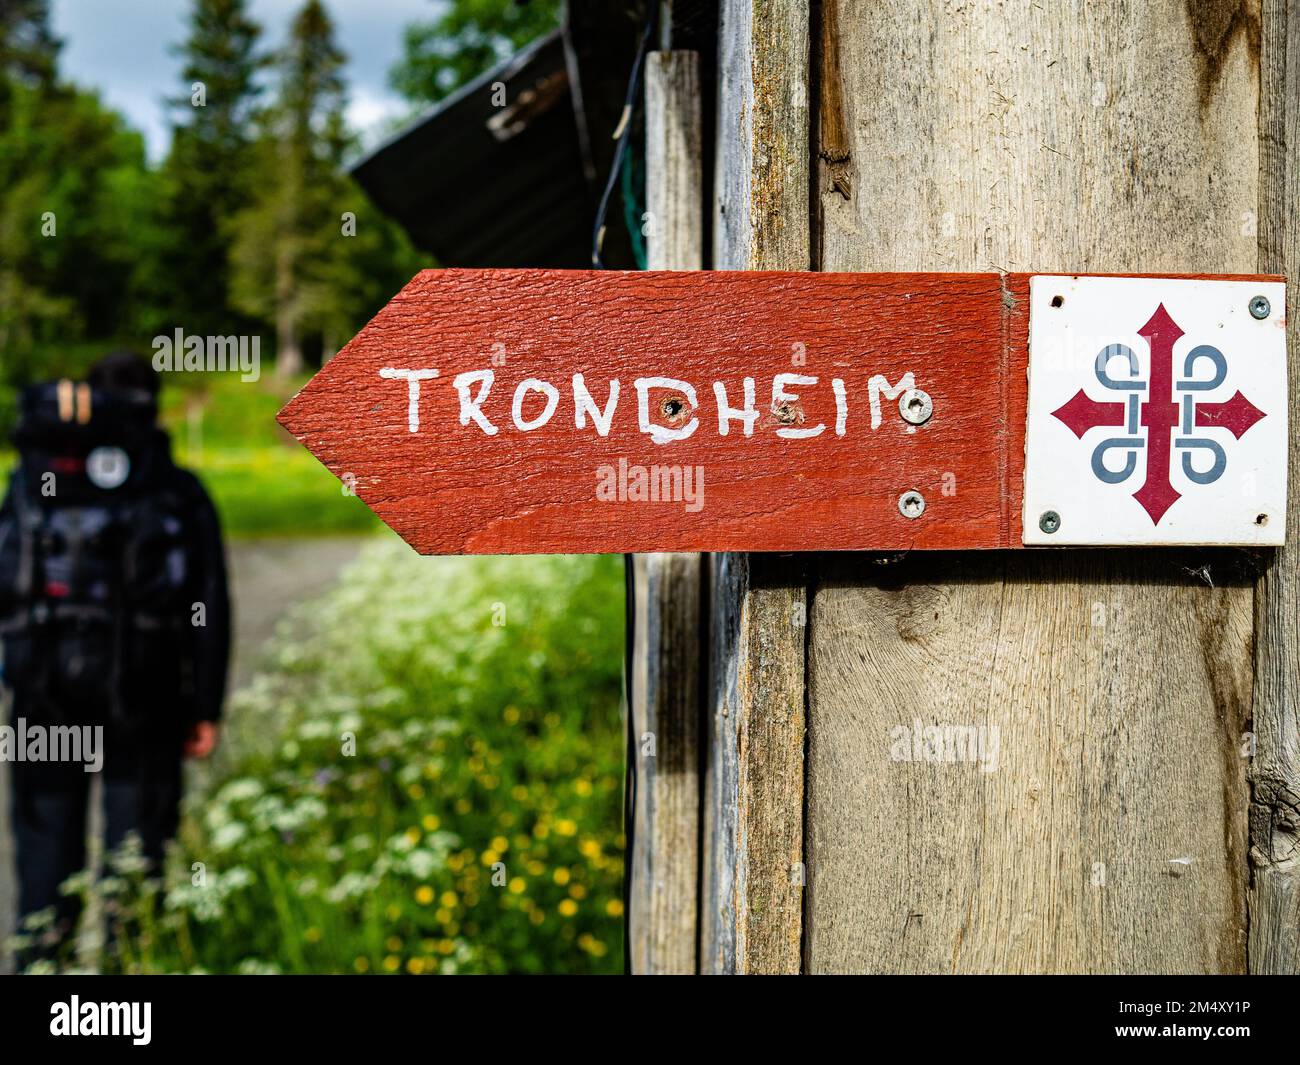 Il sentiero è segnalato per facilitare ai pellegrini la ricerca di questa strada scandinava. La Croce di Sant’Olav conduce la strada. Questo simbolo appare come un distintivo di metallo, un adesivo o un pezzo di legno e si trova a intervalli regolari lungo l'intero sentiero di St Olavsleden. Il pellegrinaggio scandinavo è conosciuto come 'St. Olavsleden', è una rotta 580km che va dal Mar Baltico ad est all'Oceano Atlantico ad ovest, da Selånger in Svezia a Trondheim in Norvegia. Foto Stock